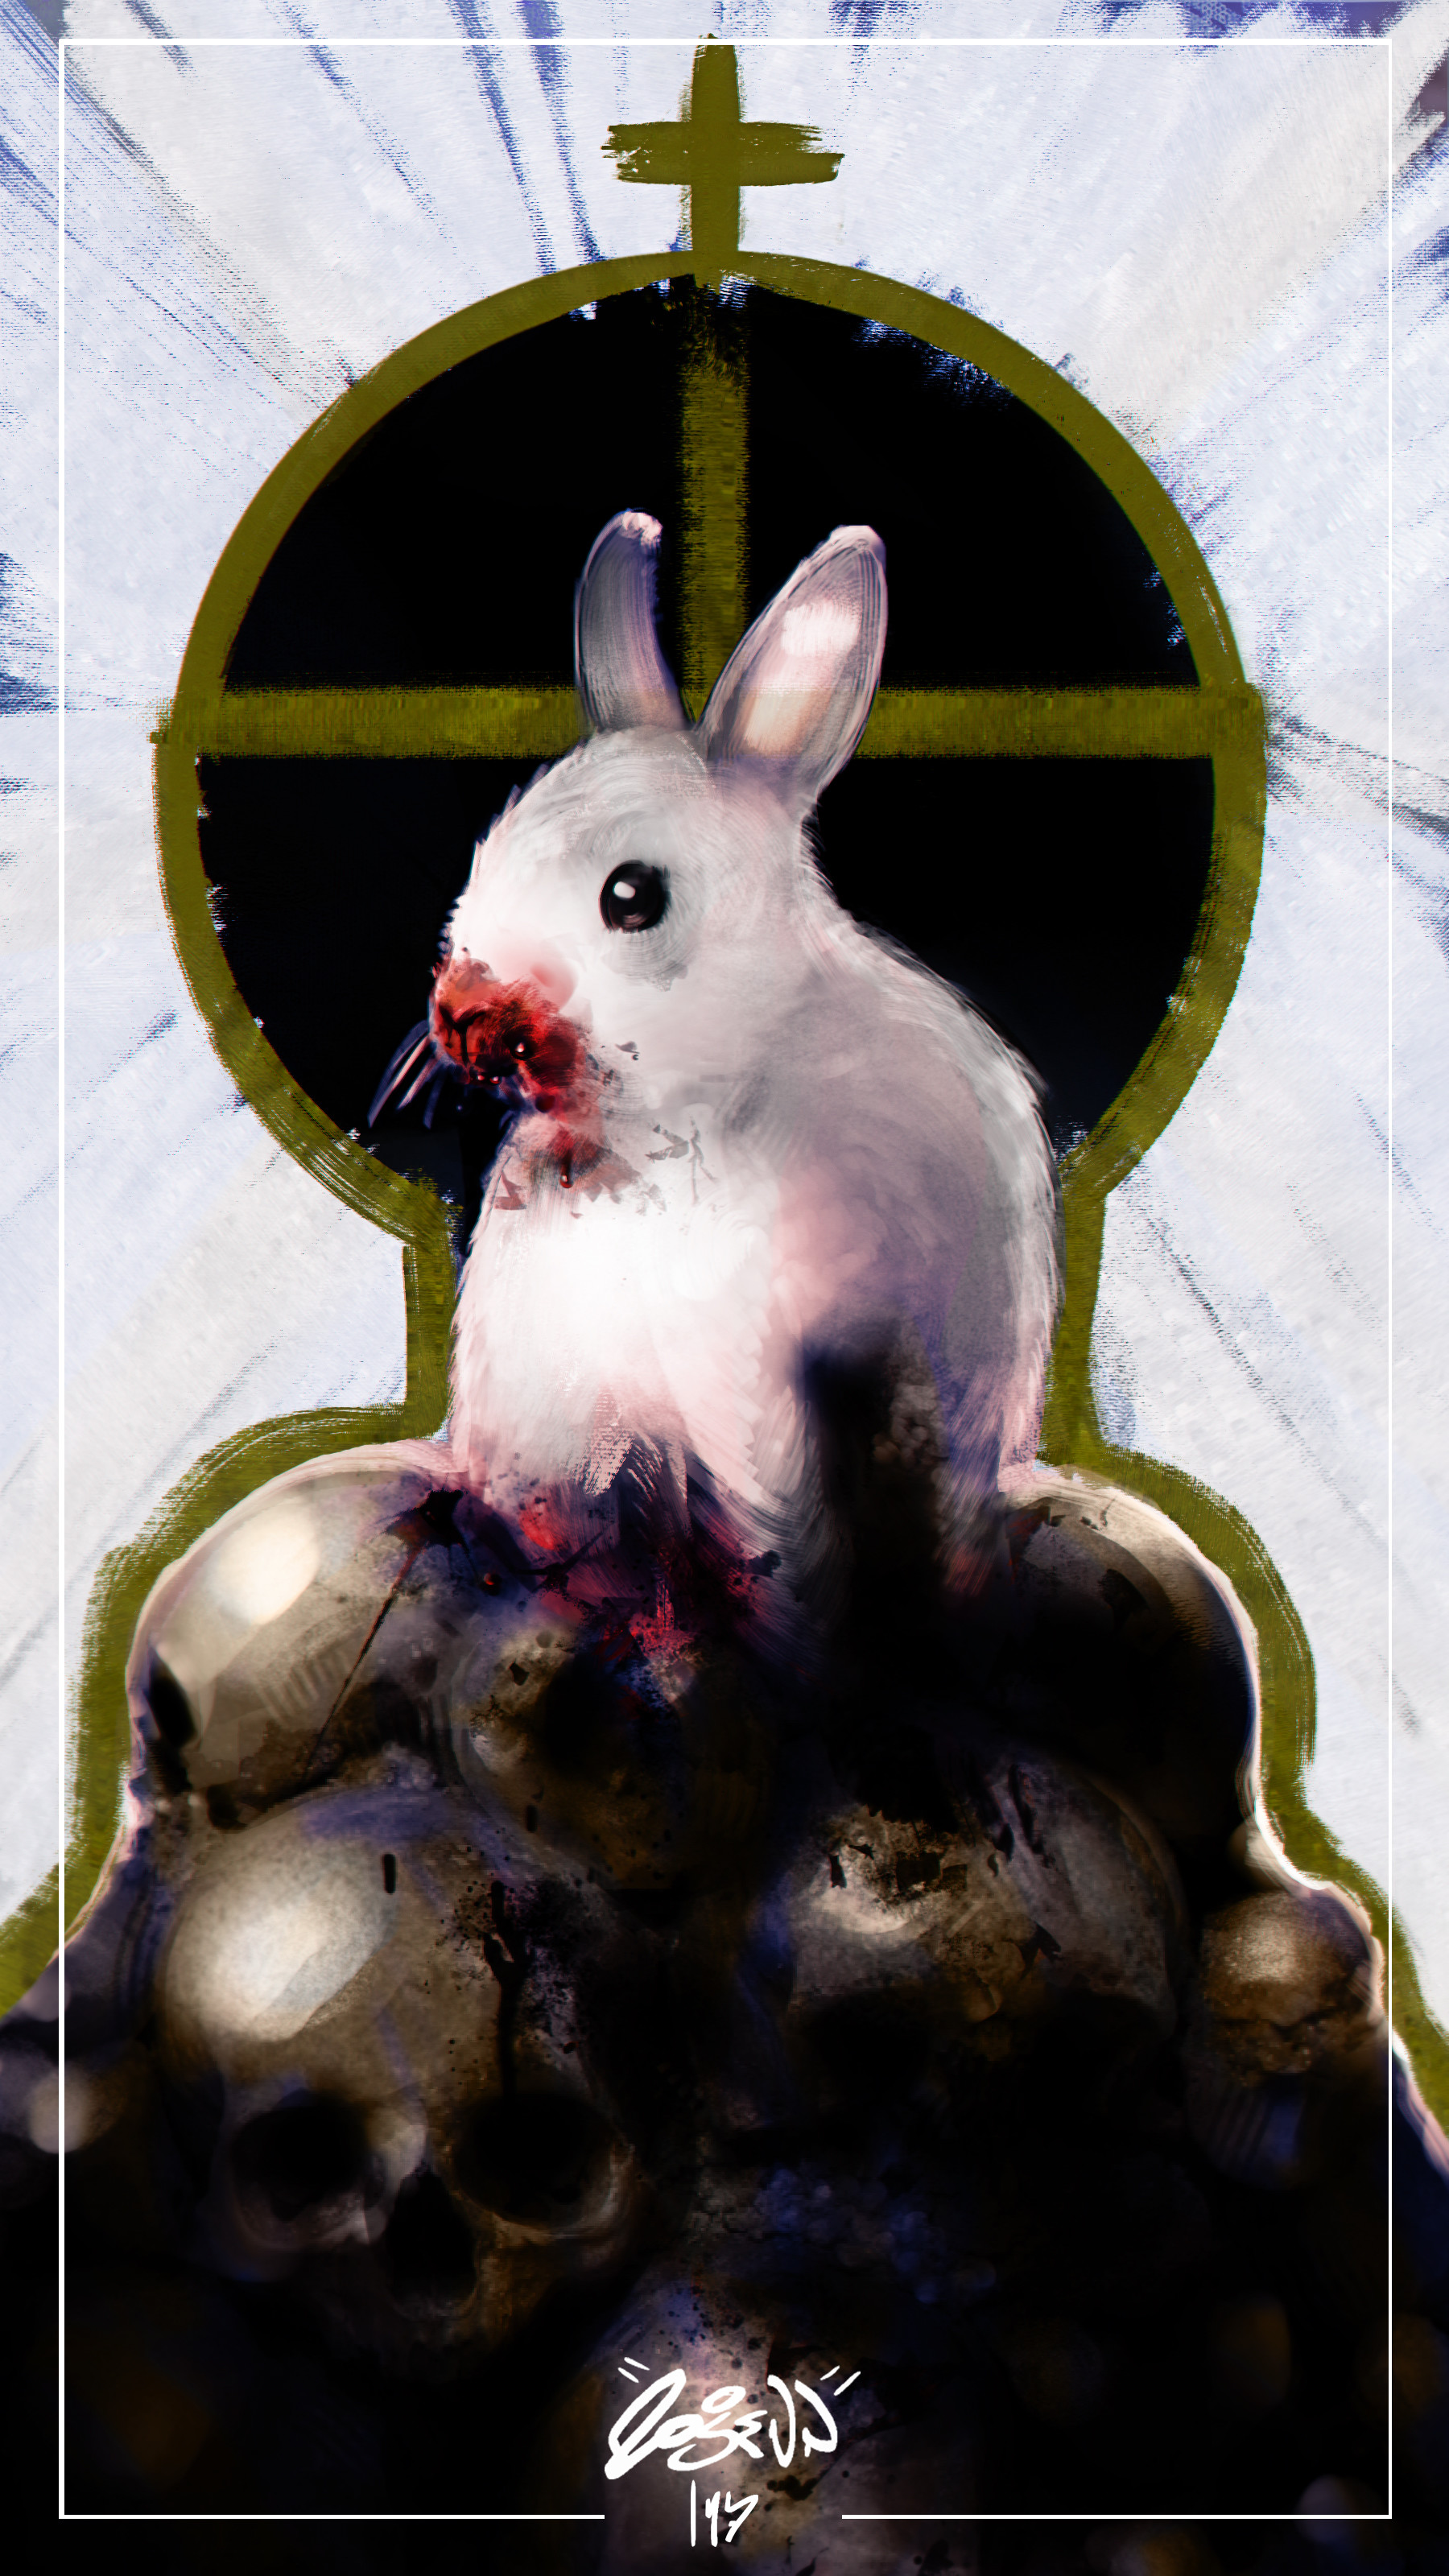 Phat rabbit